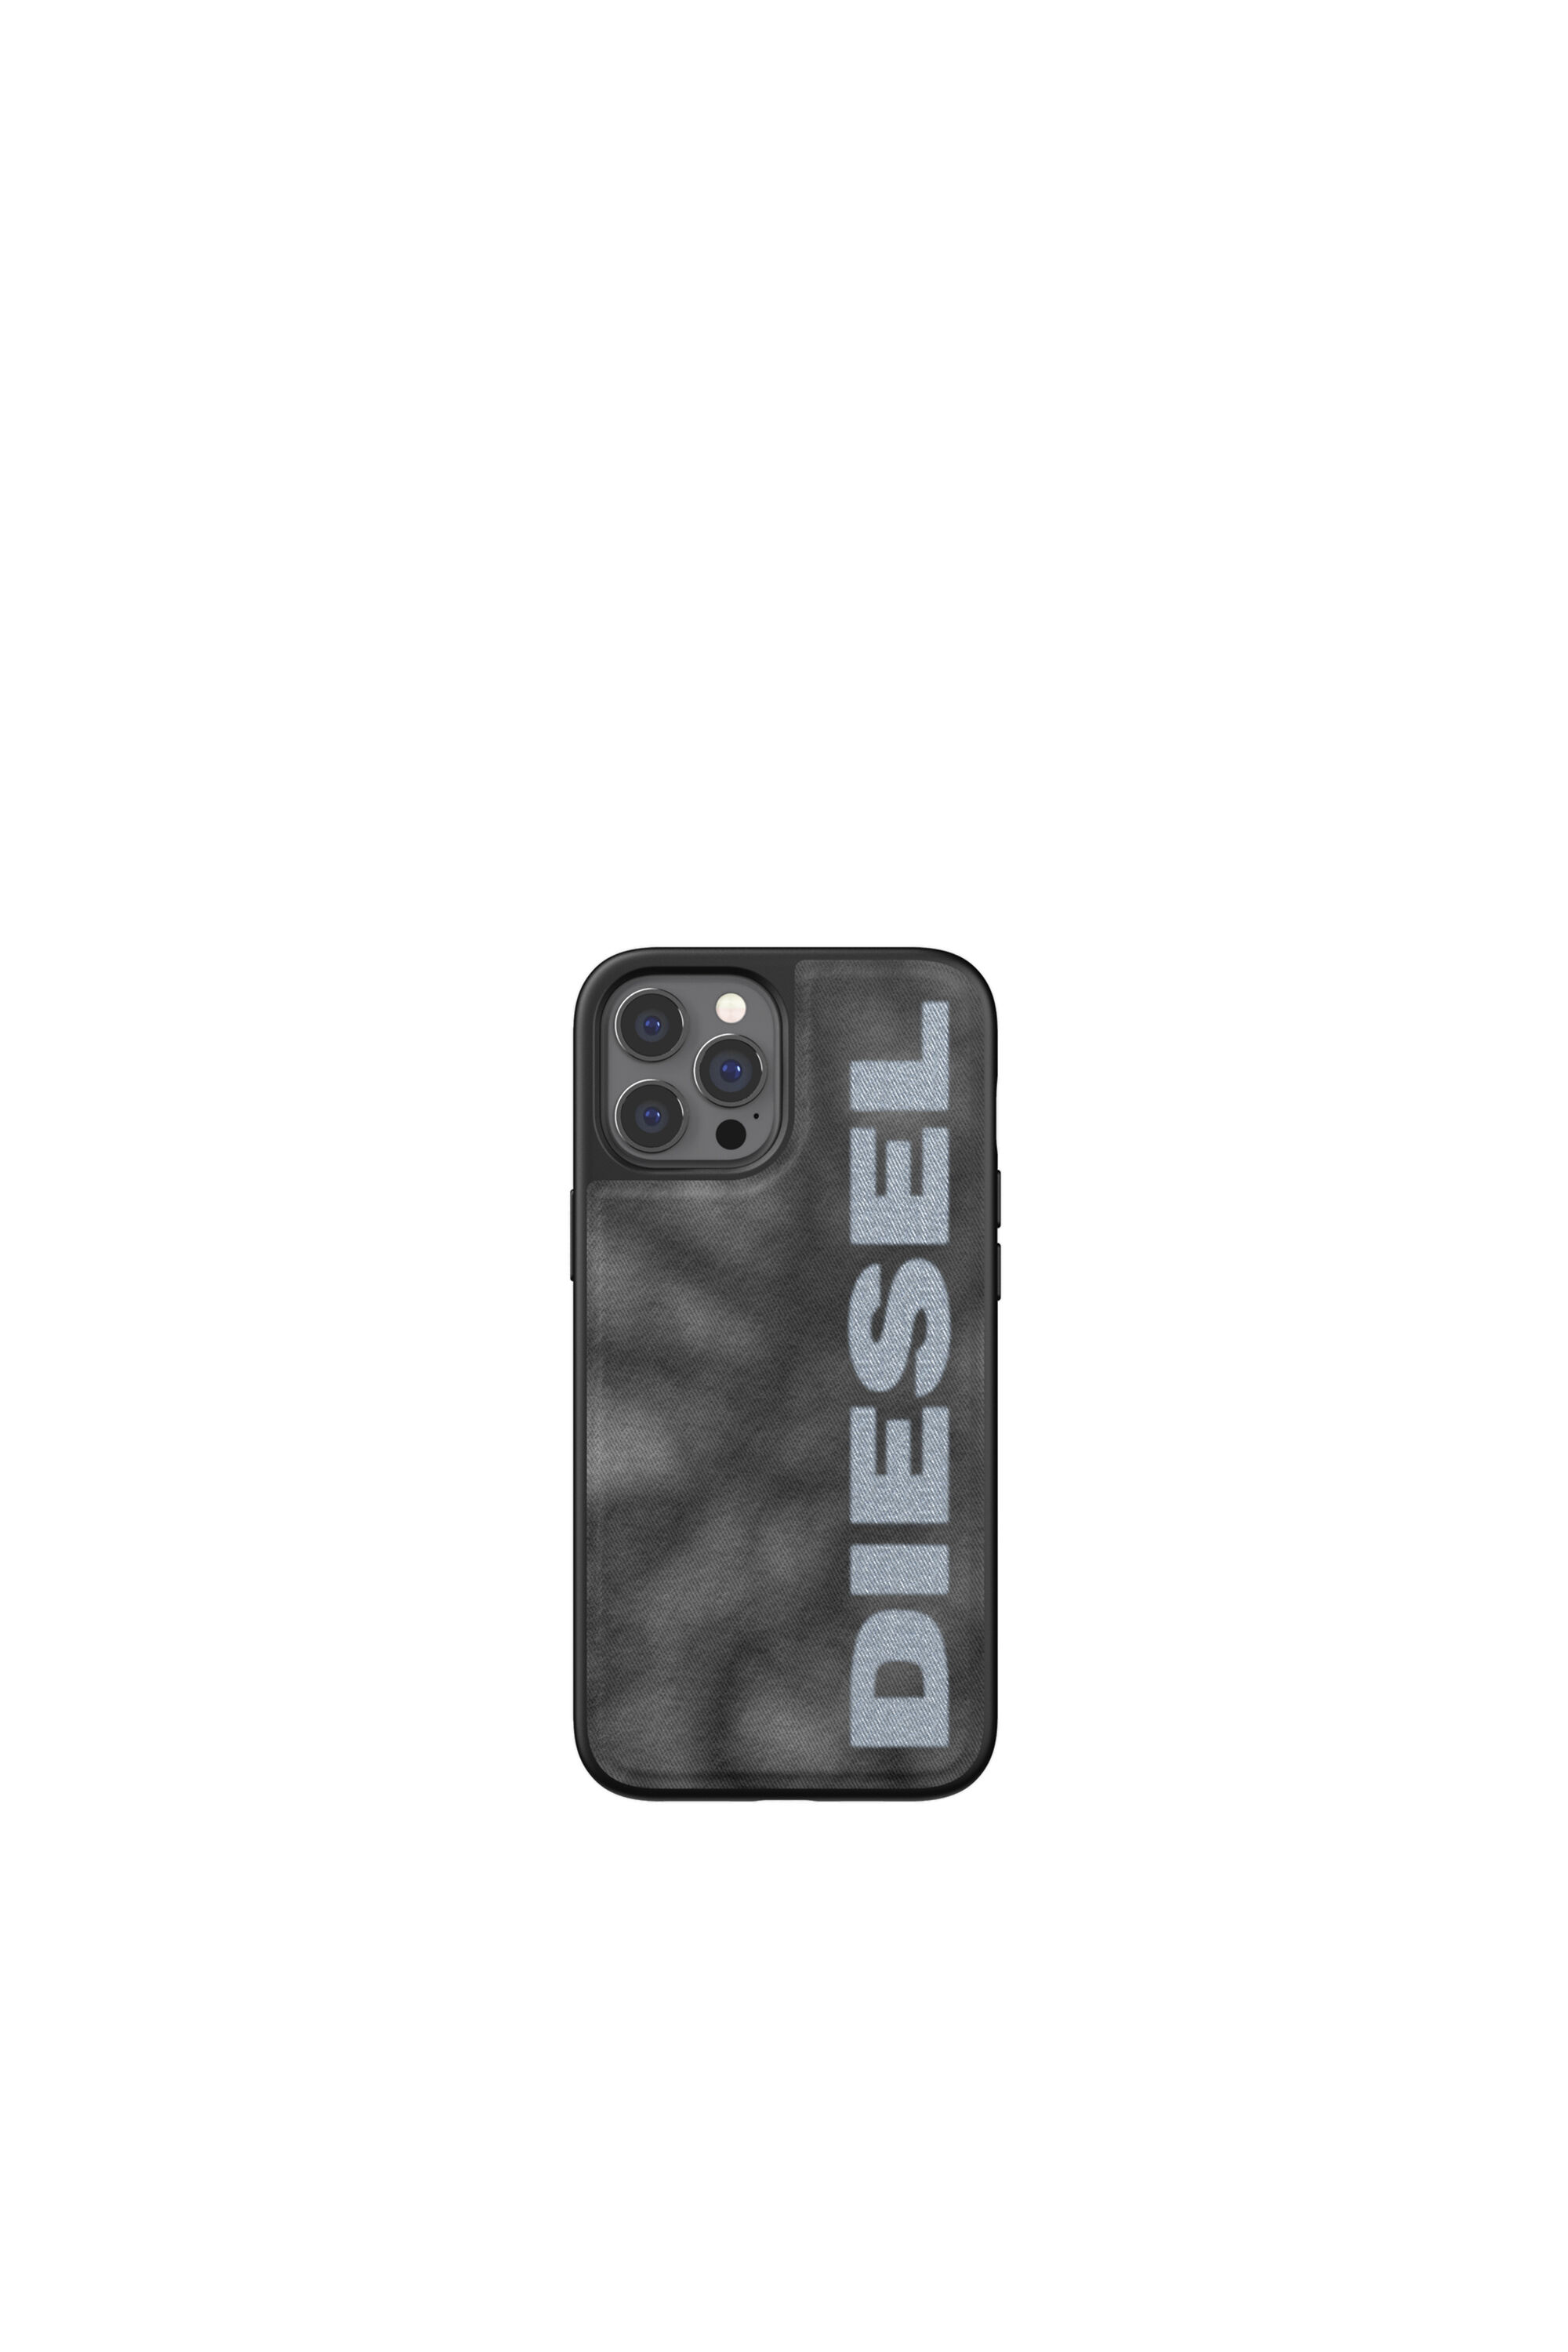 Diesel - 44298  STANDARD CASES, Black/Grey - Image 2